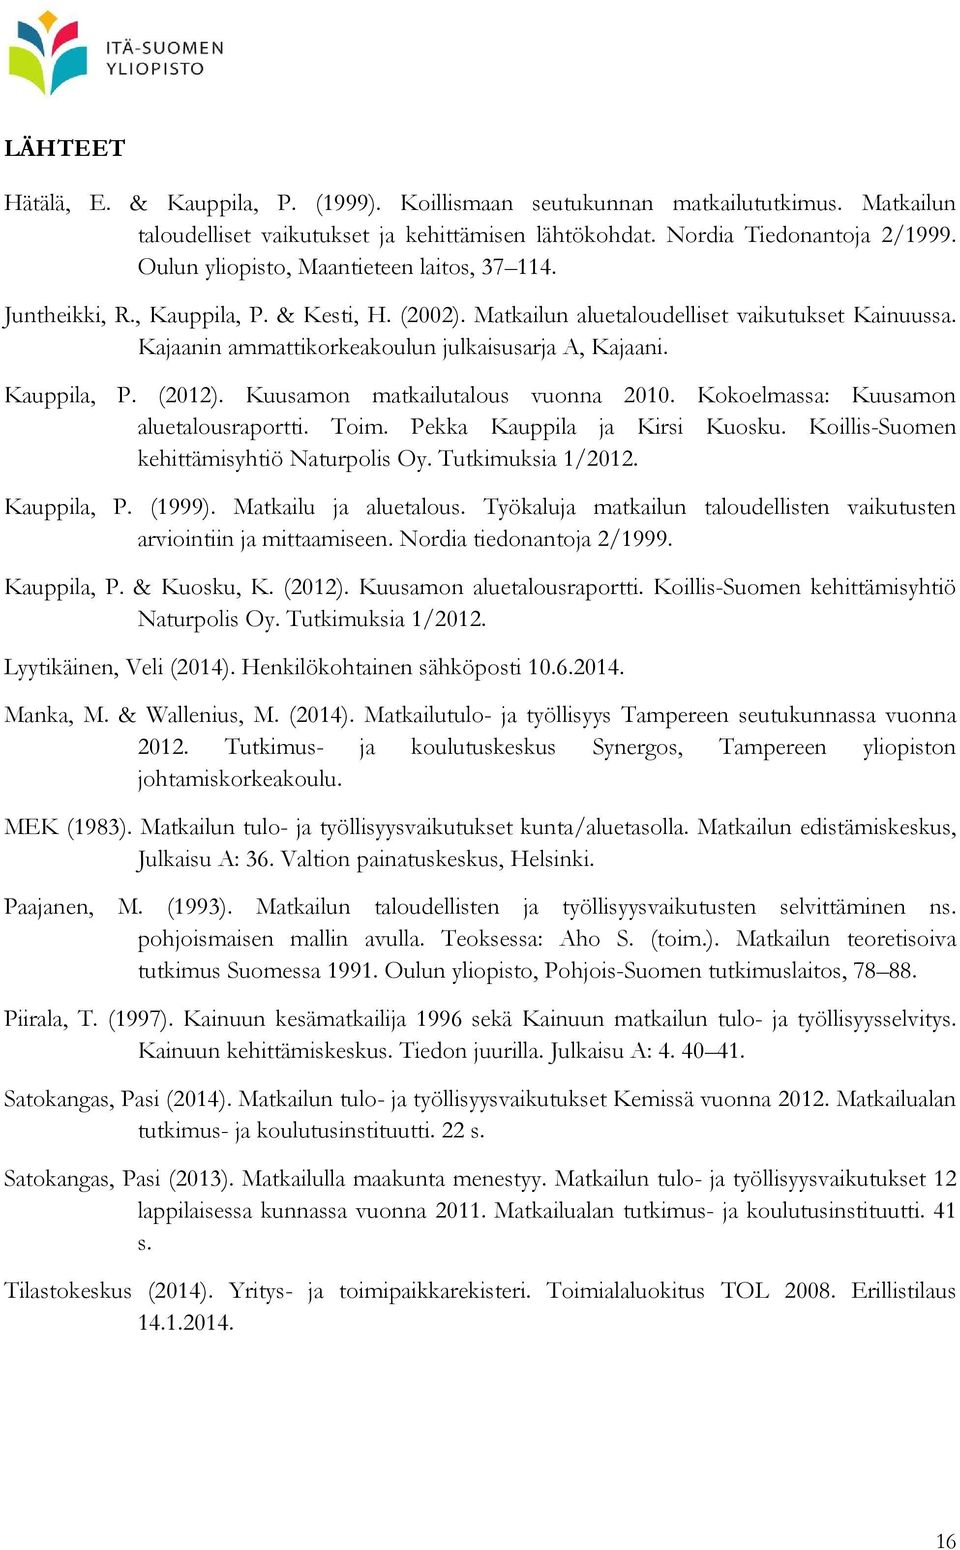 Kauppila, P. (2012). Kuusamon matkailutalous vuonna 2010. Kokoelmassa: Kuusamon aluetalousraportti. Toim. Pekka Kauppila ja Kirsi Kuosku. Koillis-Suomen kehittämisyhtiö Naturpolis Oy.